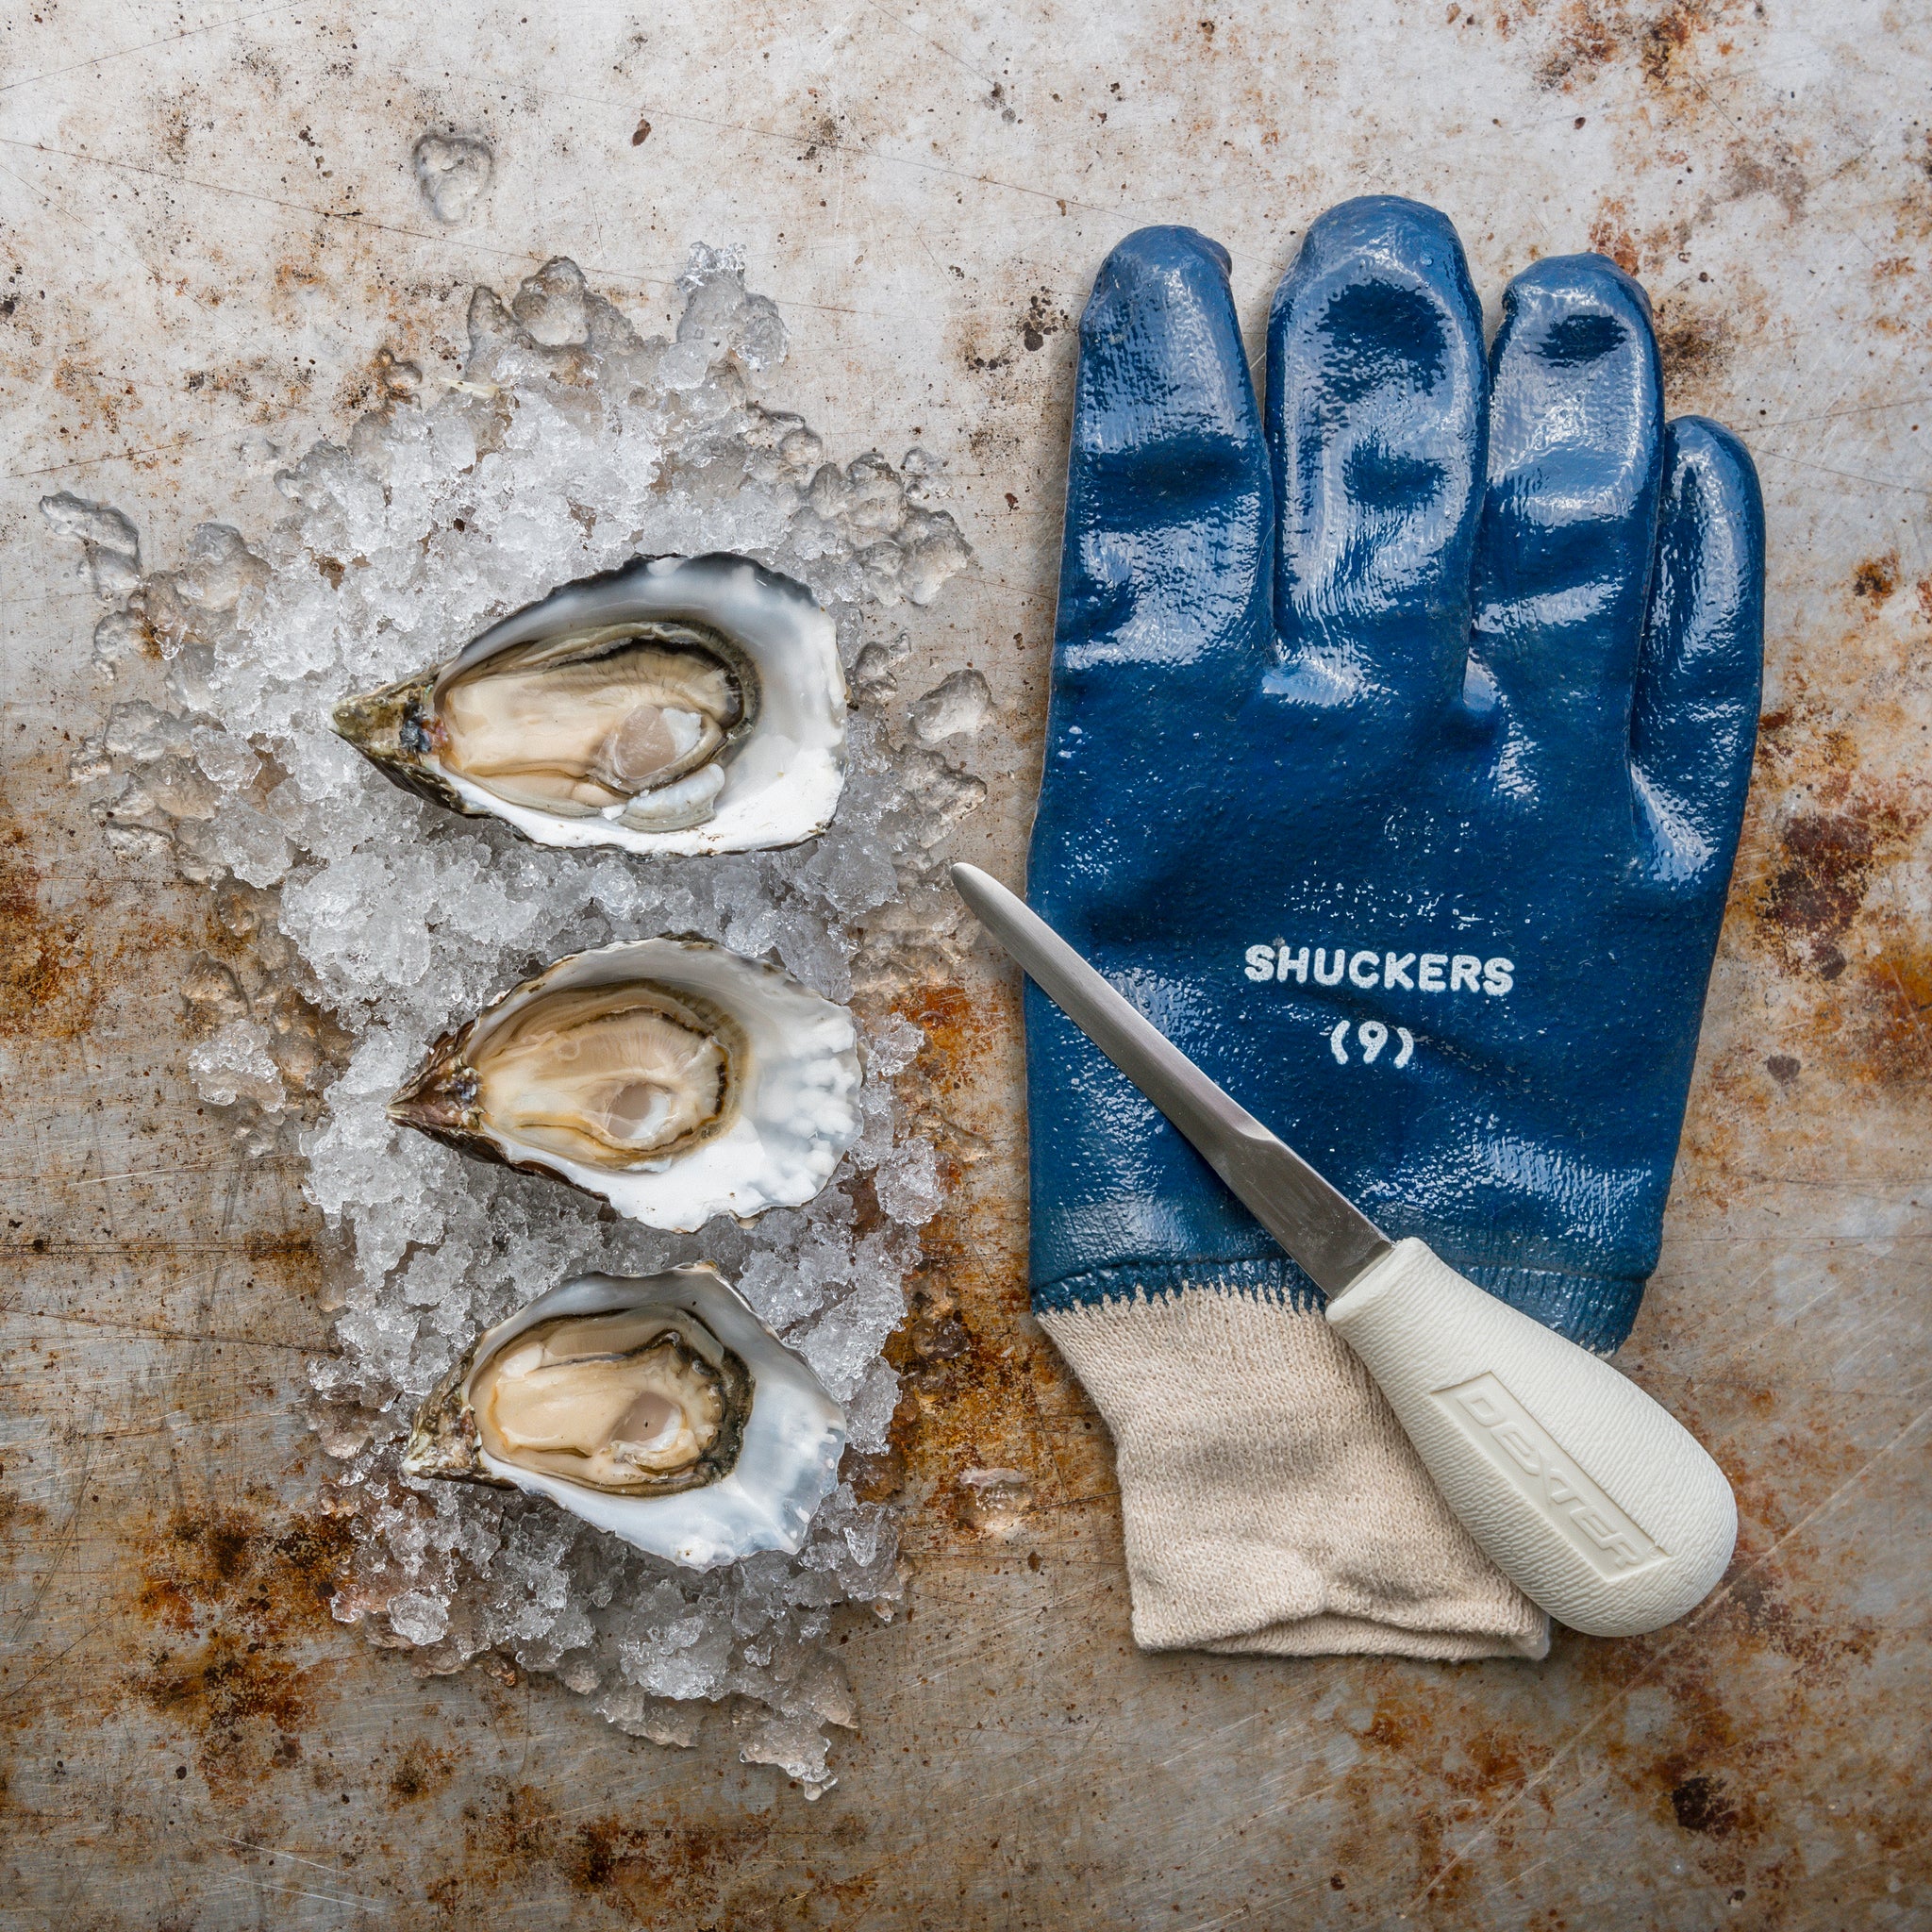 Oyster Shucking Glove